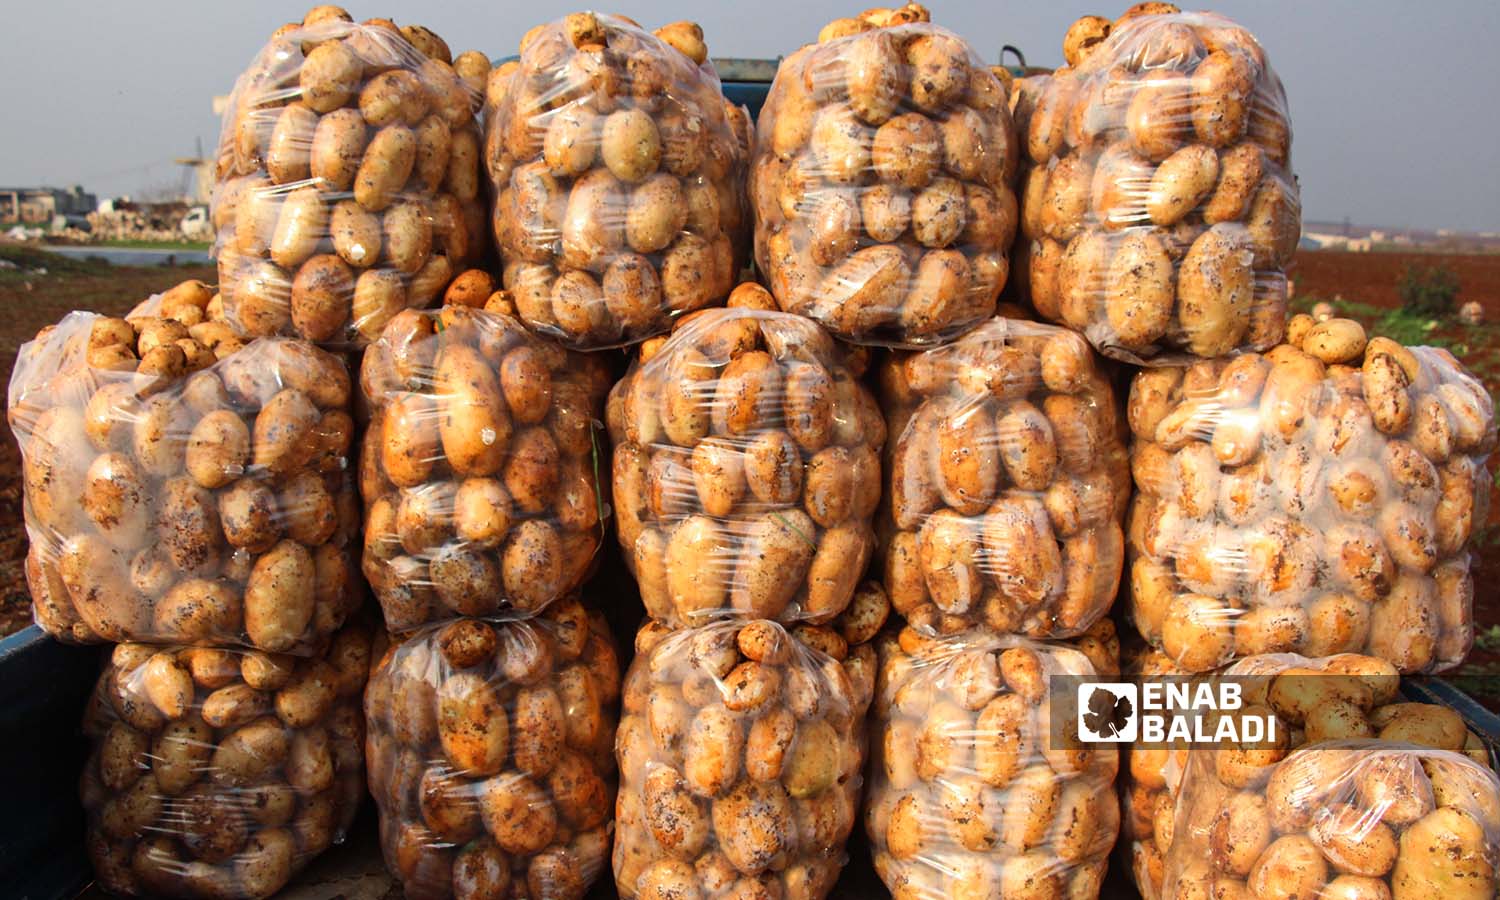 محصول البطاطا معبأ بأكياس مجهز للبيع في بلدة زردنا بريف ادلب - 26 من كانون الأول 2022 (عنب بلدي/ إياد عبد الجواد)
